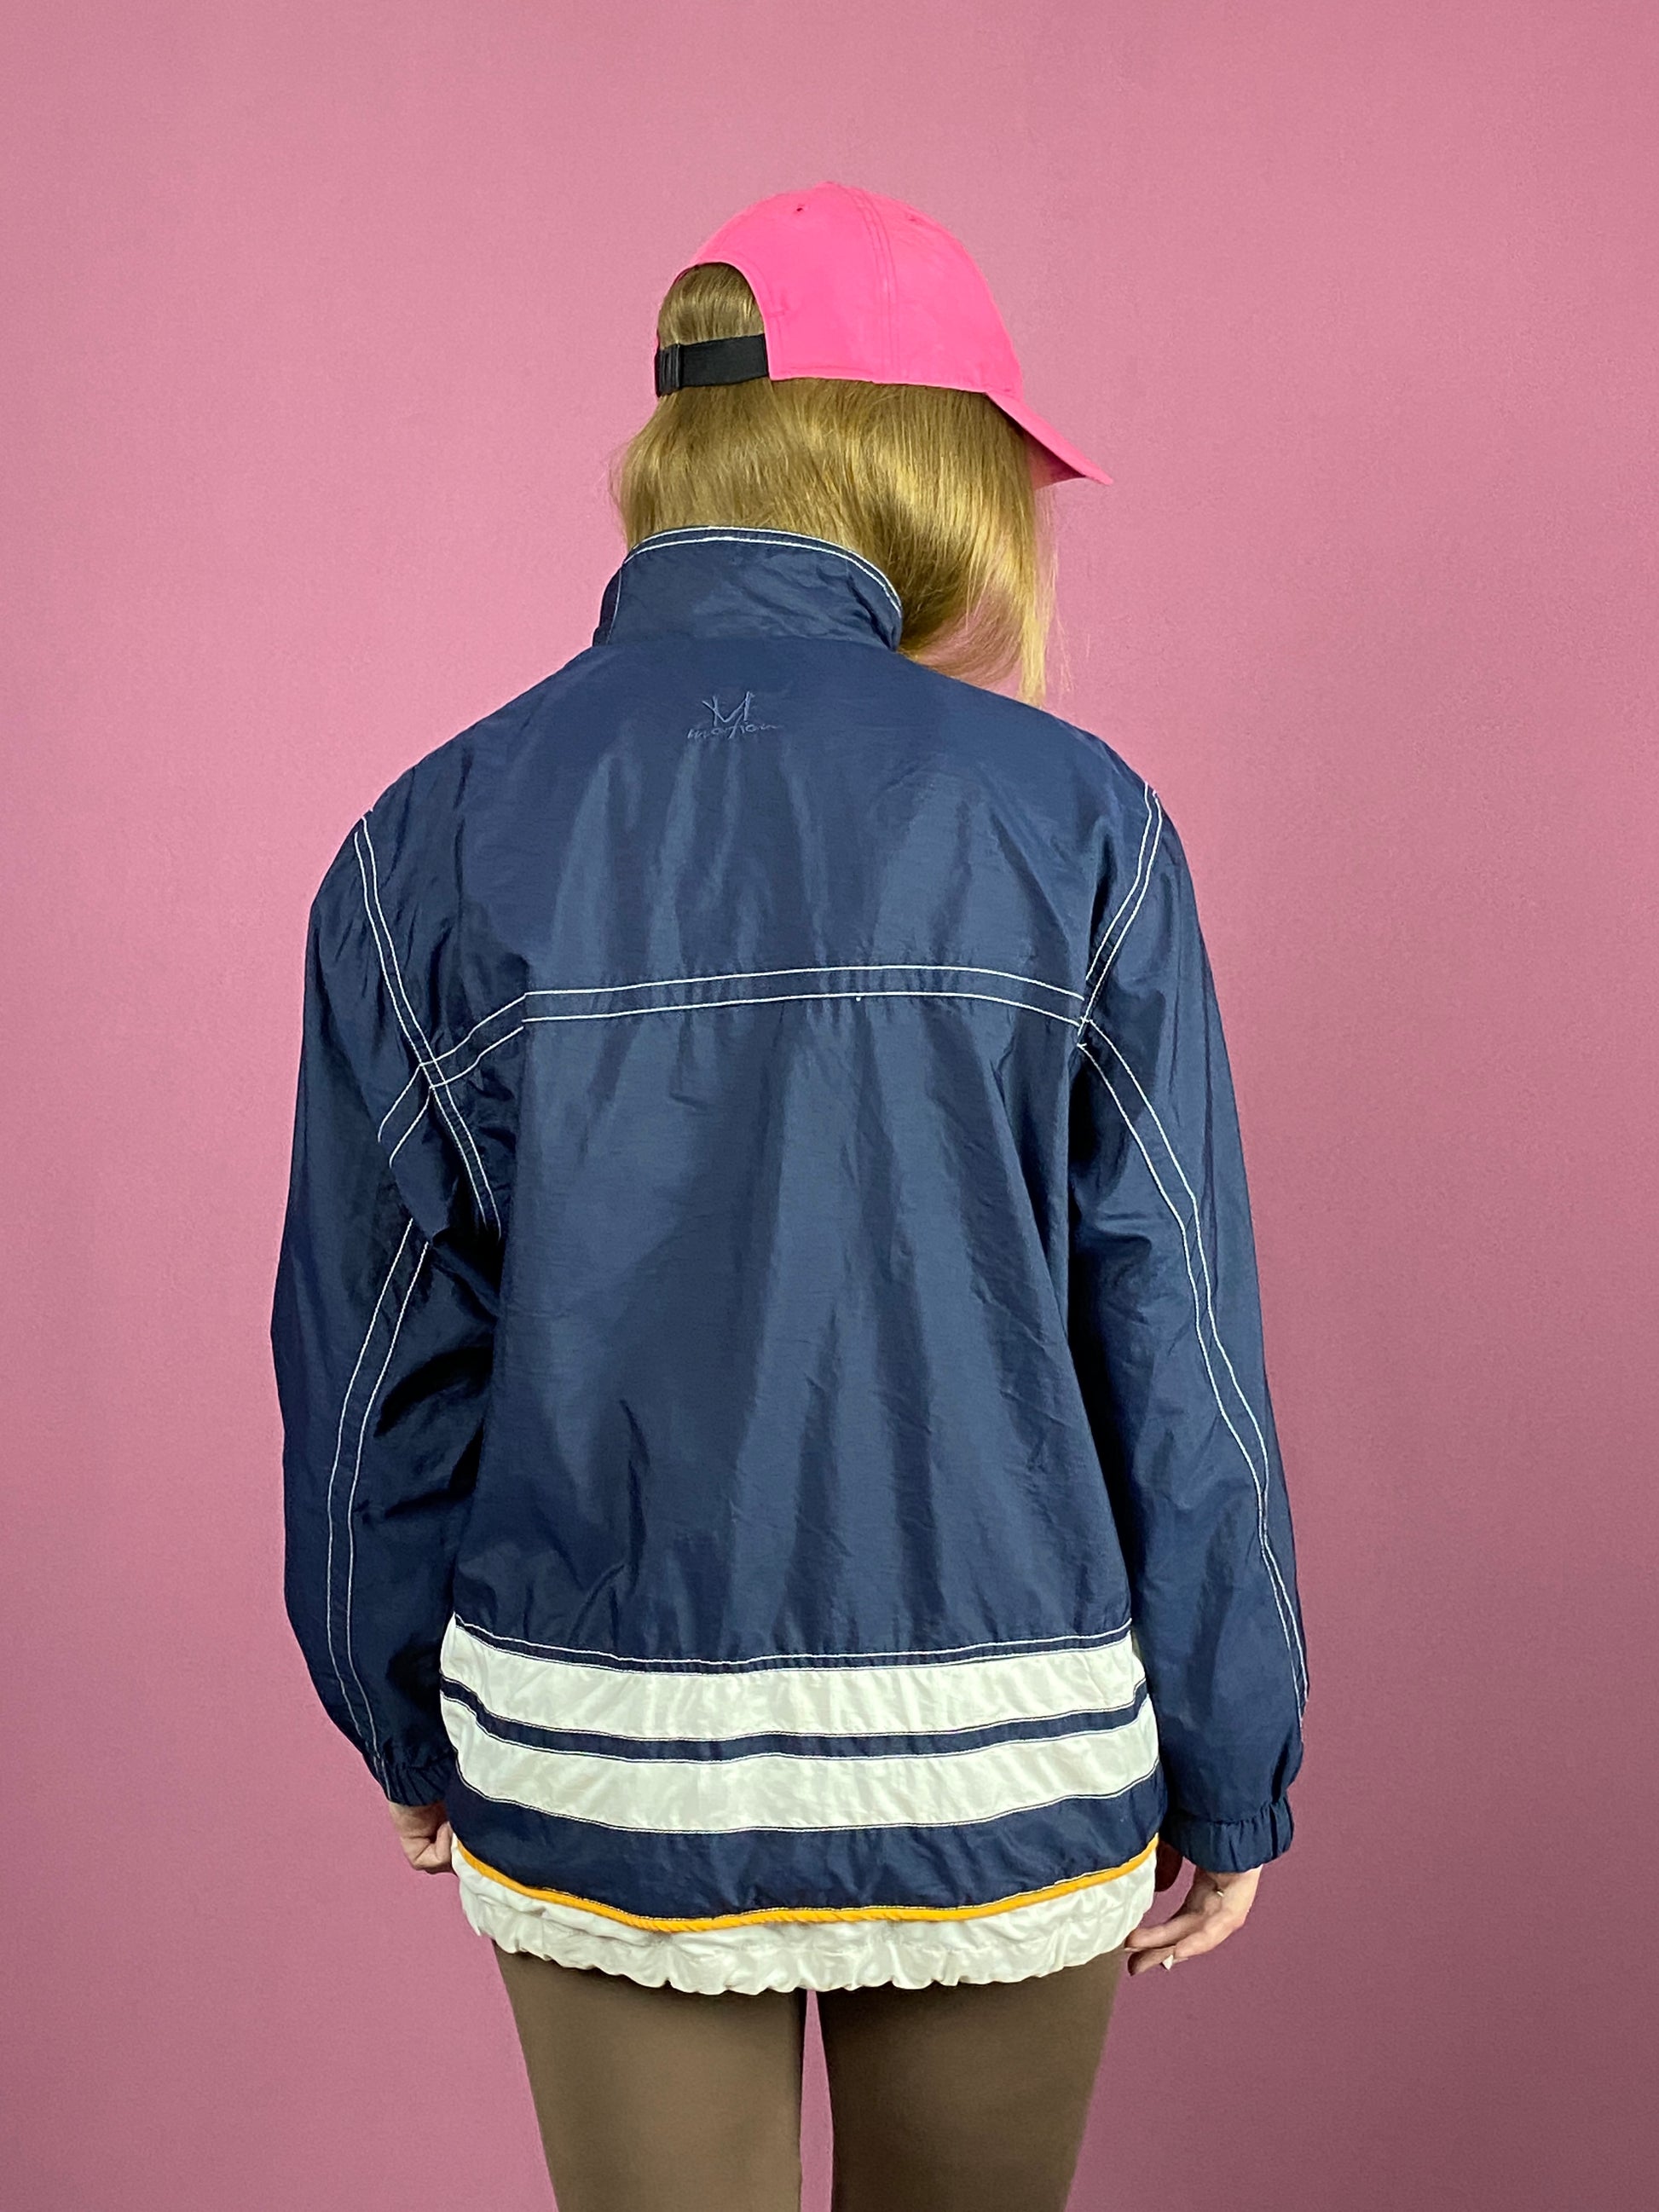 90s Vintage Women's Windbreaker Jacket